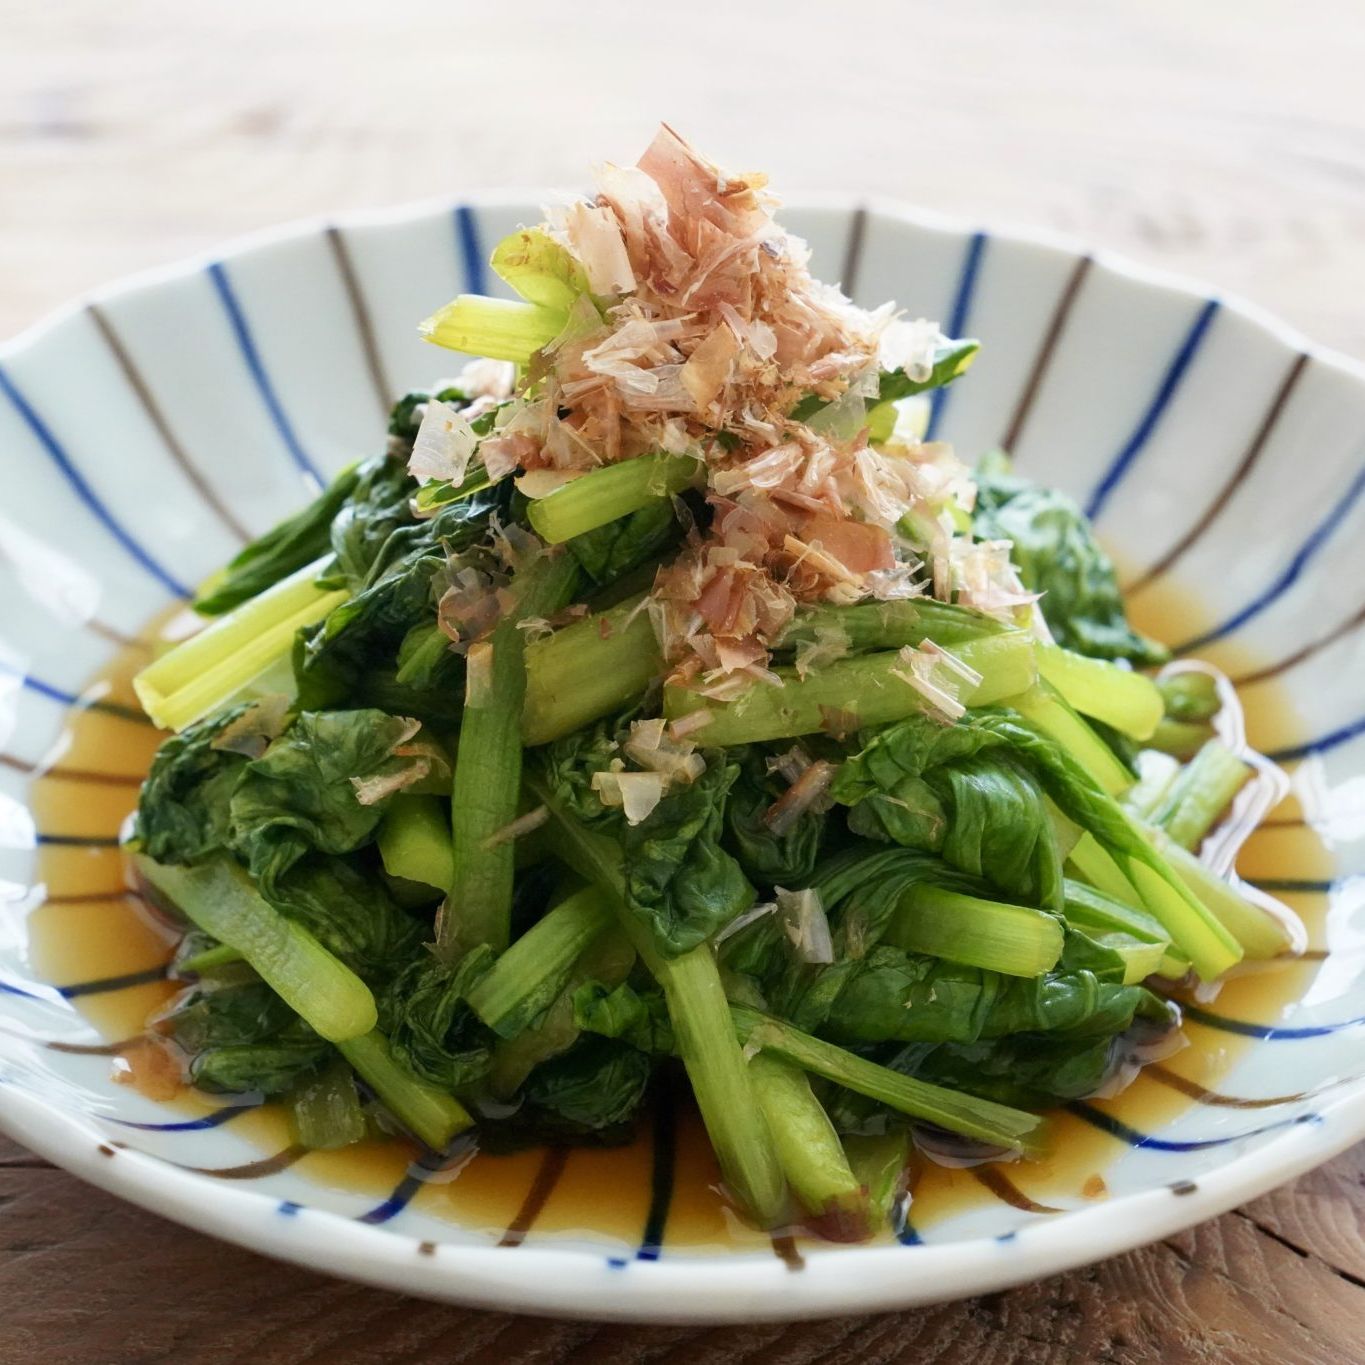 小松菜のおひたし めんつゆを使ったお浸しの簡単レンジレシピ やまでら くみこ のレシピ